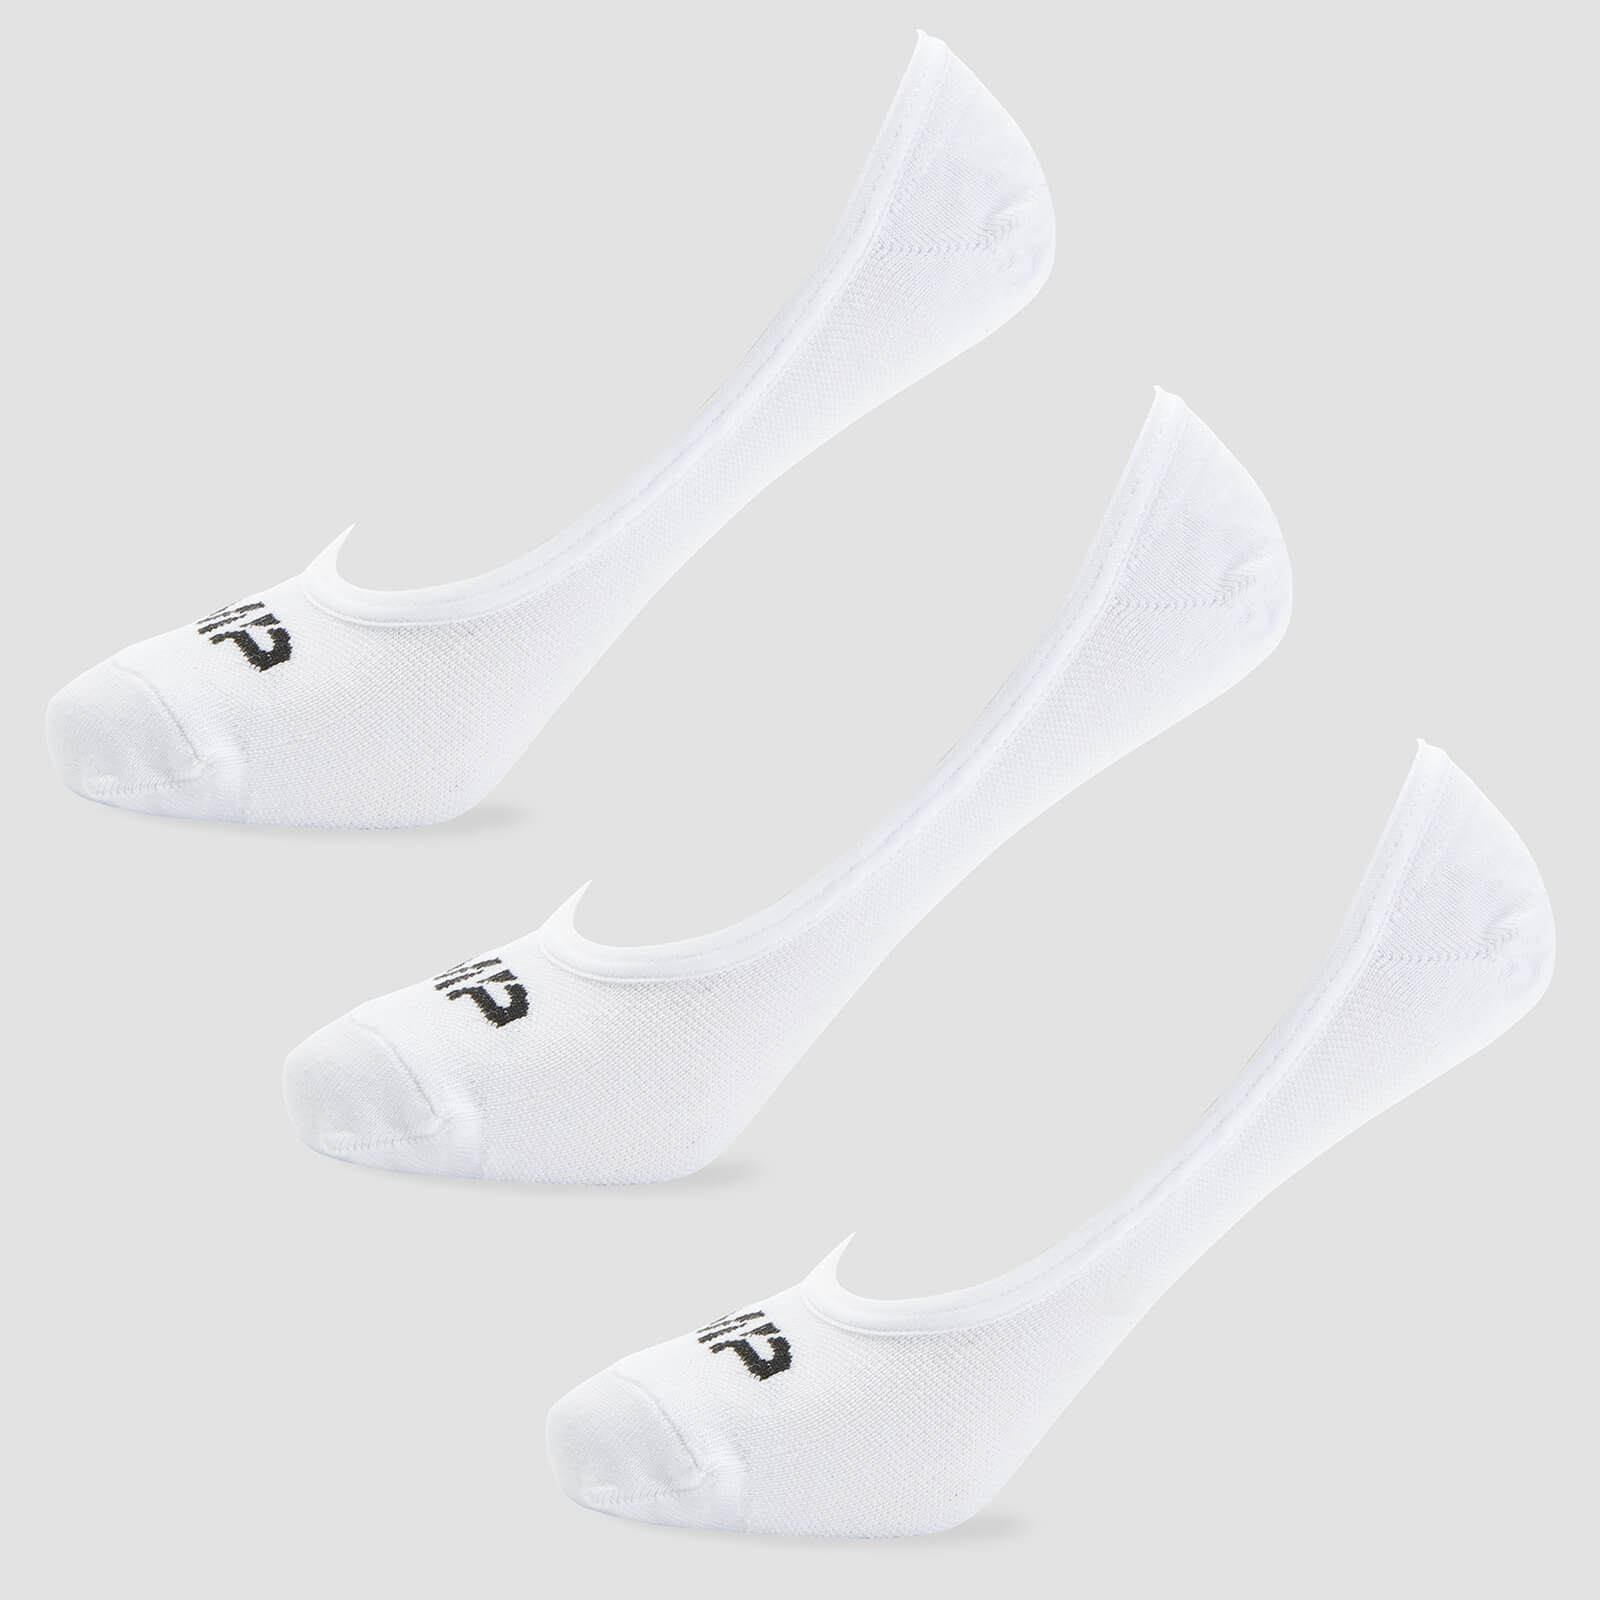 Muške nevidljive čarape - Bijele (3 para)